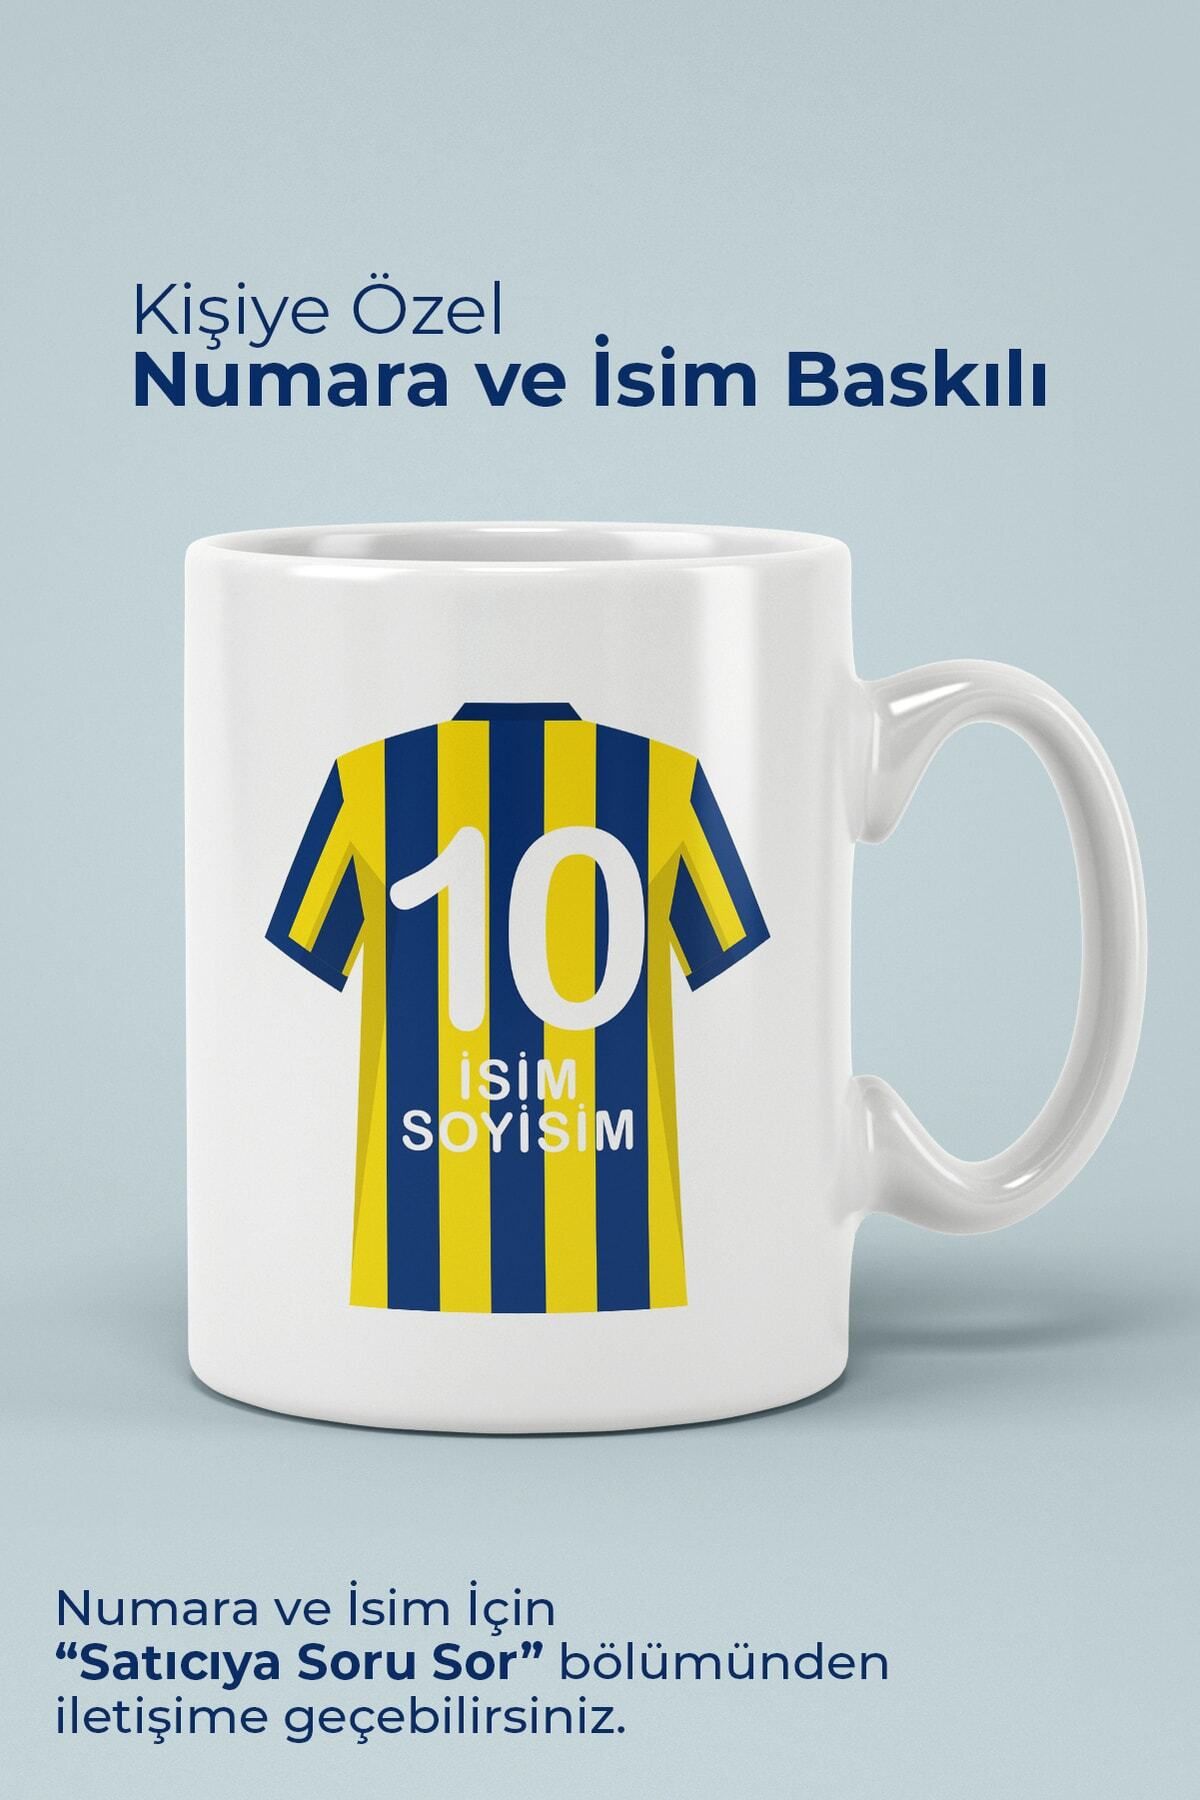 Klein Home Fenerbahçeli Kişiye Özel Numaralı Desenli Porselen Kupa Bardak